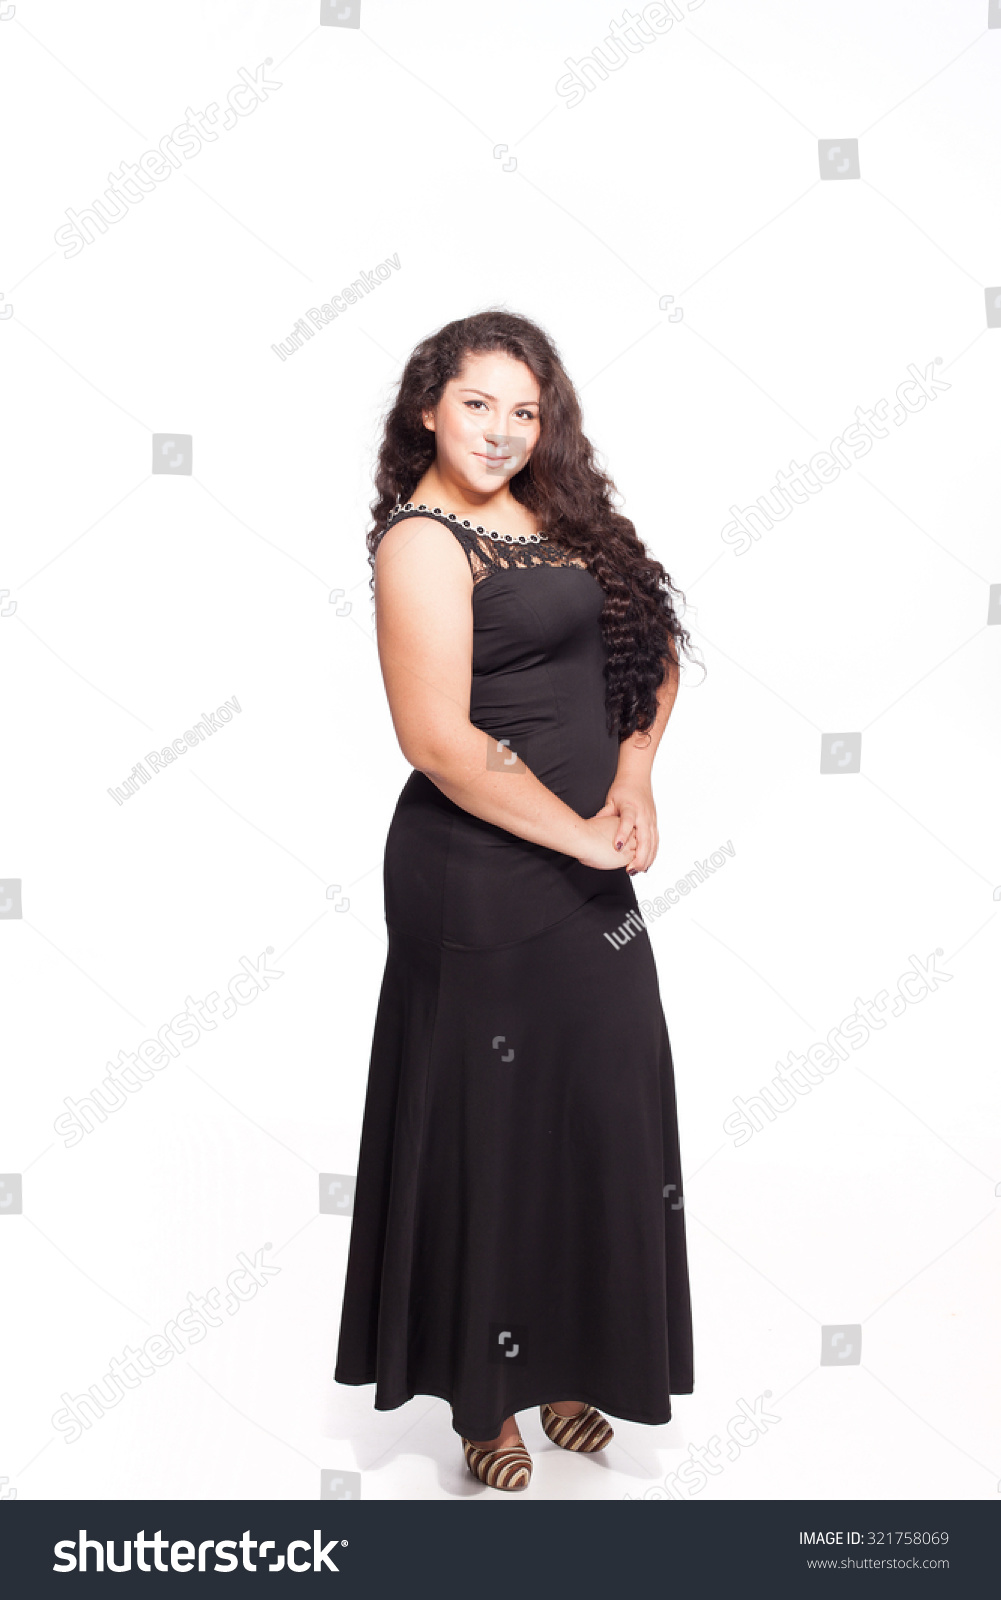 fat girl in black dress